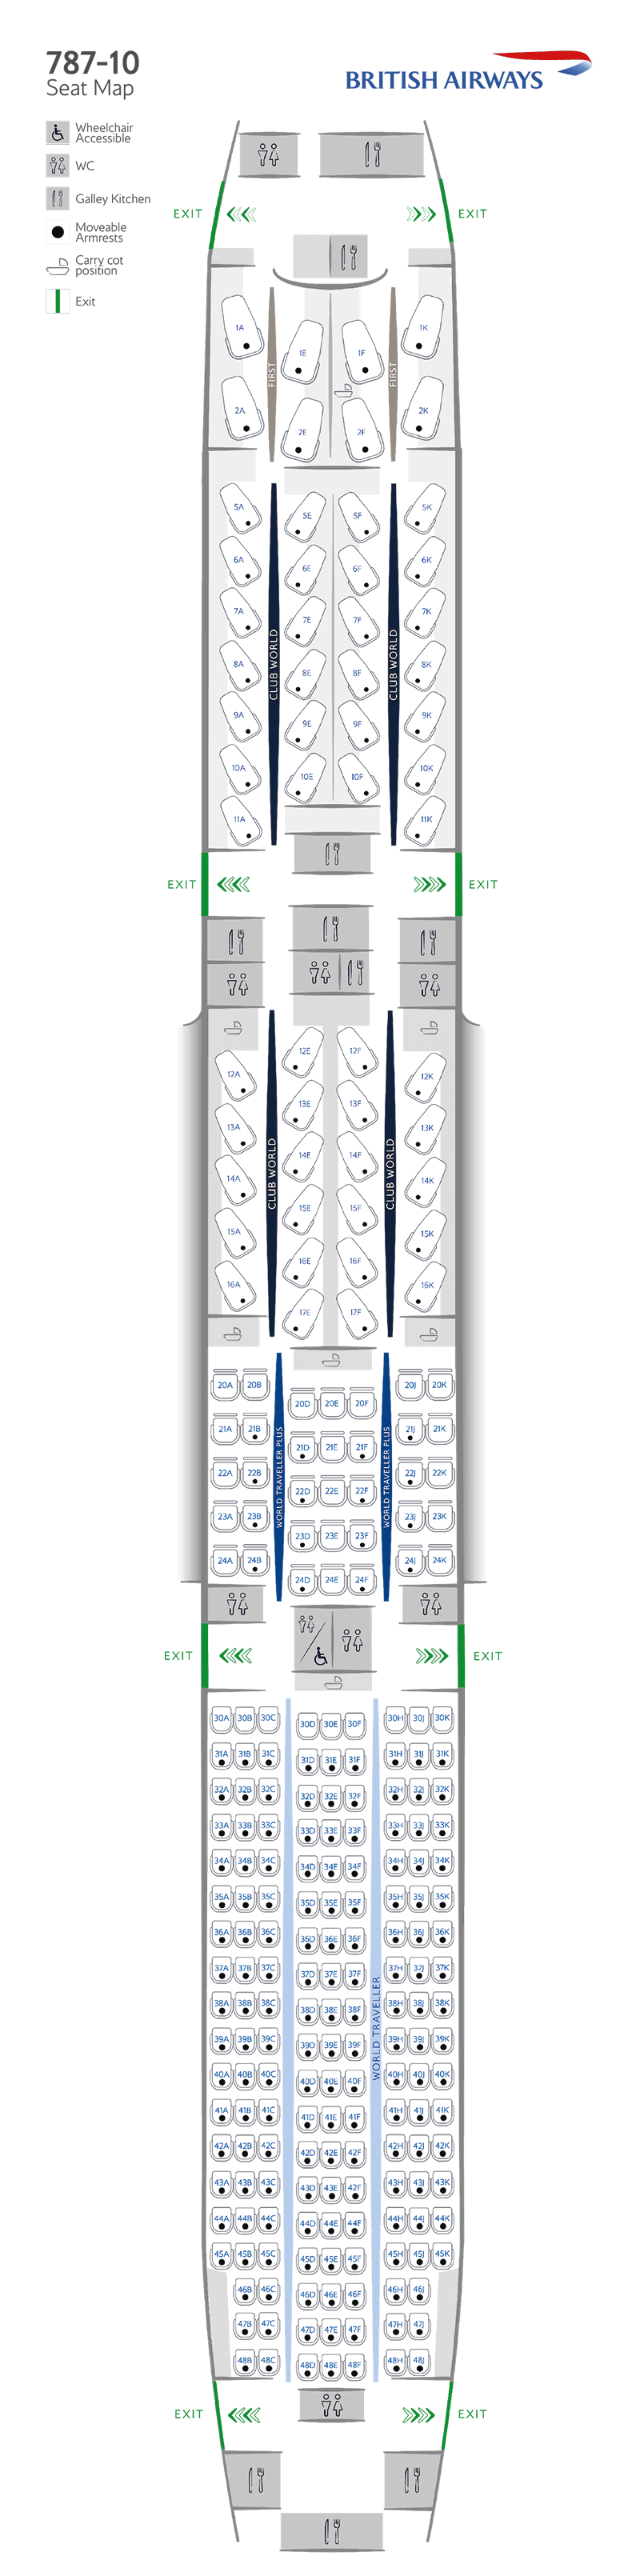 Configurazione dei posti Boeing 787-10